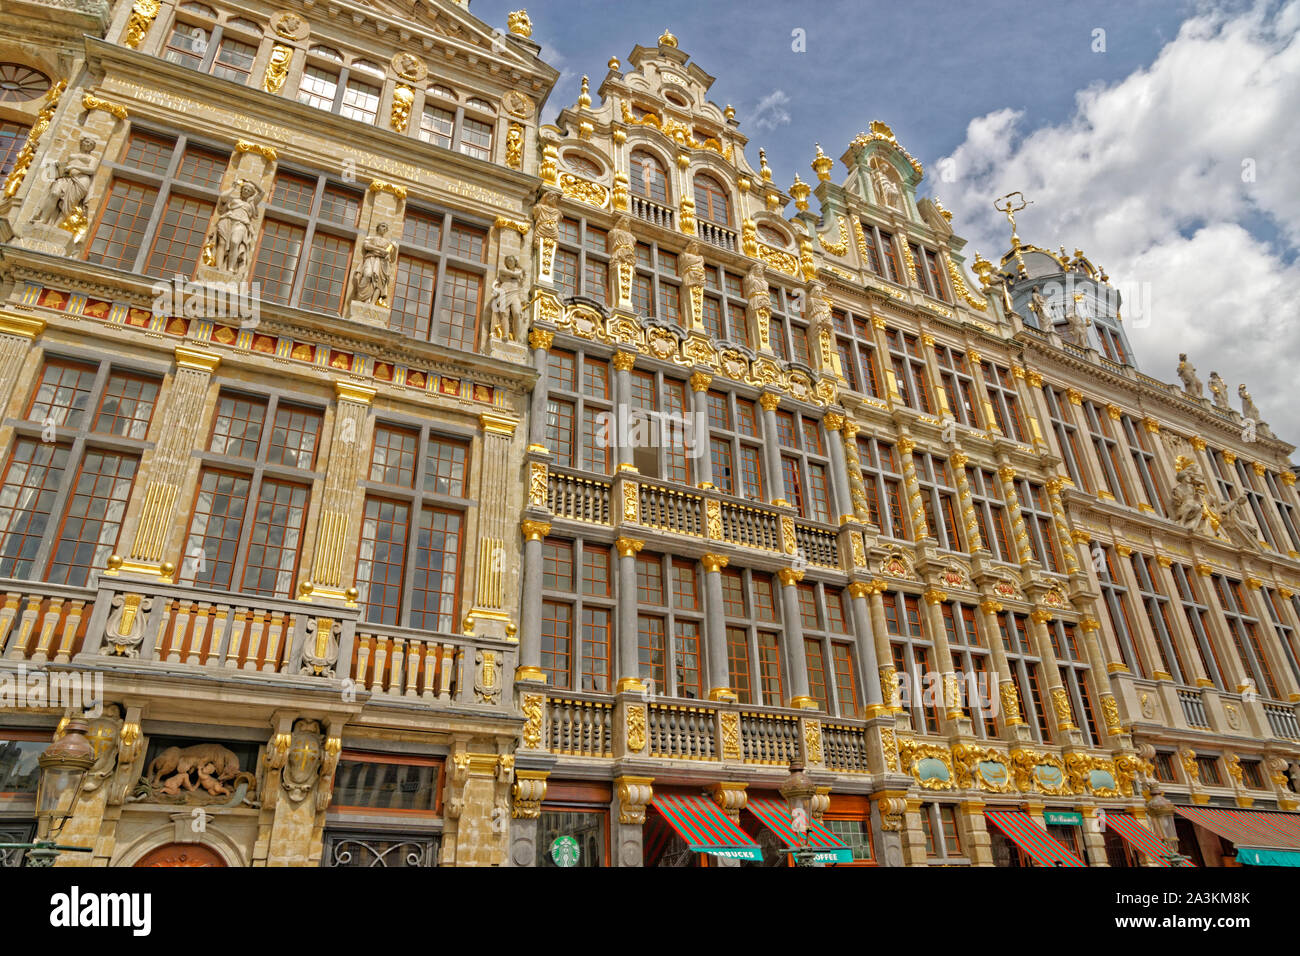 Reich verzierten vergoldeten Gebäude in der Grande Place, Brüssel, Belgien. Stockfoto